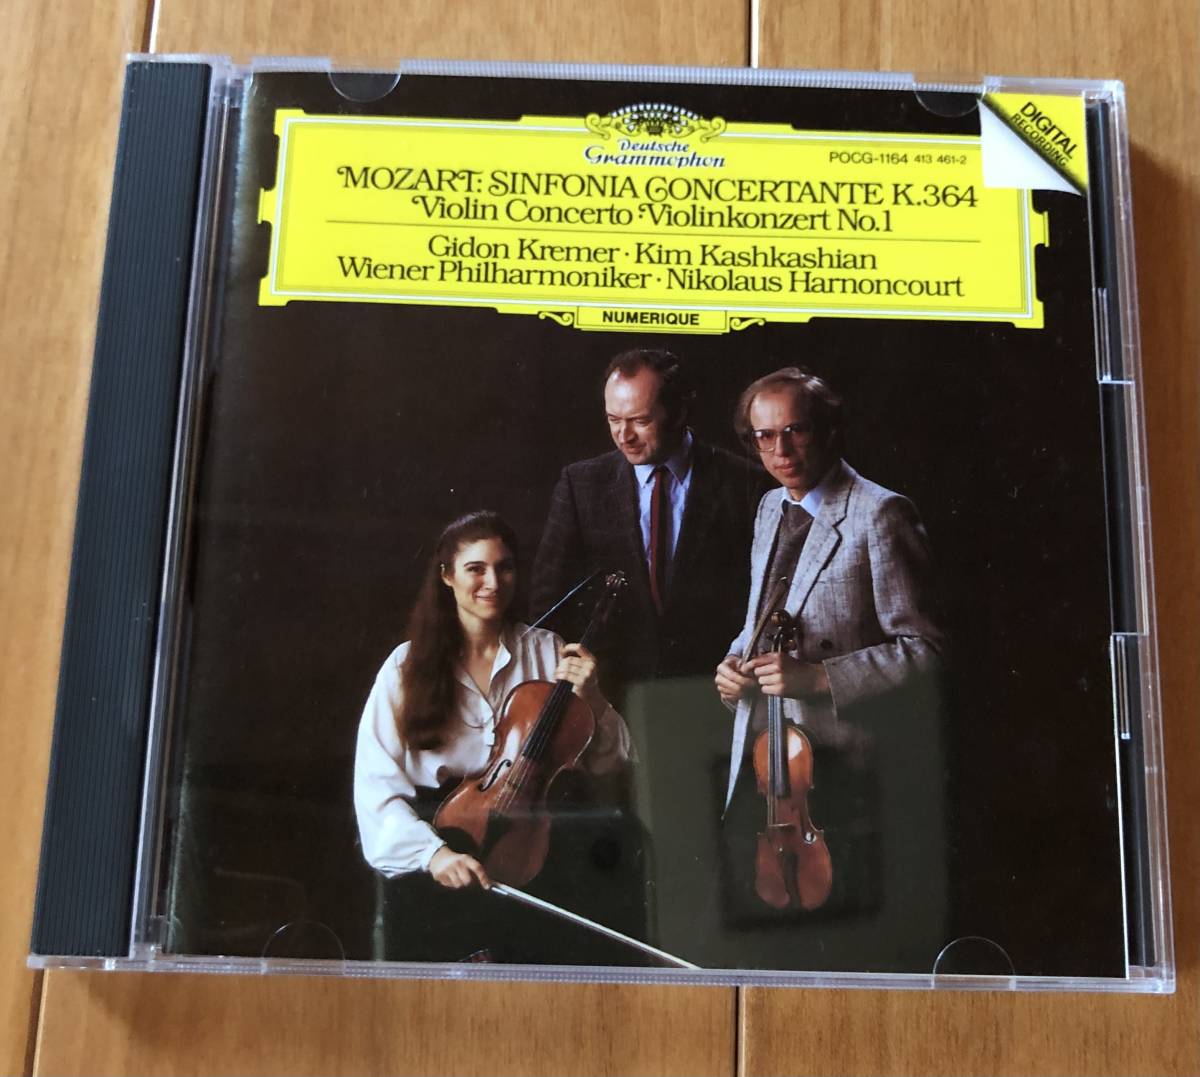 CD-Sep / 日 DG / クレーメル(vn)、カシュカシャン(viola)、アーノンクール・ウィーンフィル / モーツァルト_協奏交響曲 K.364 他 